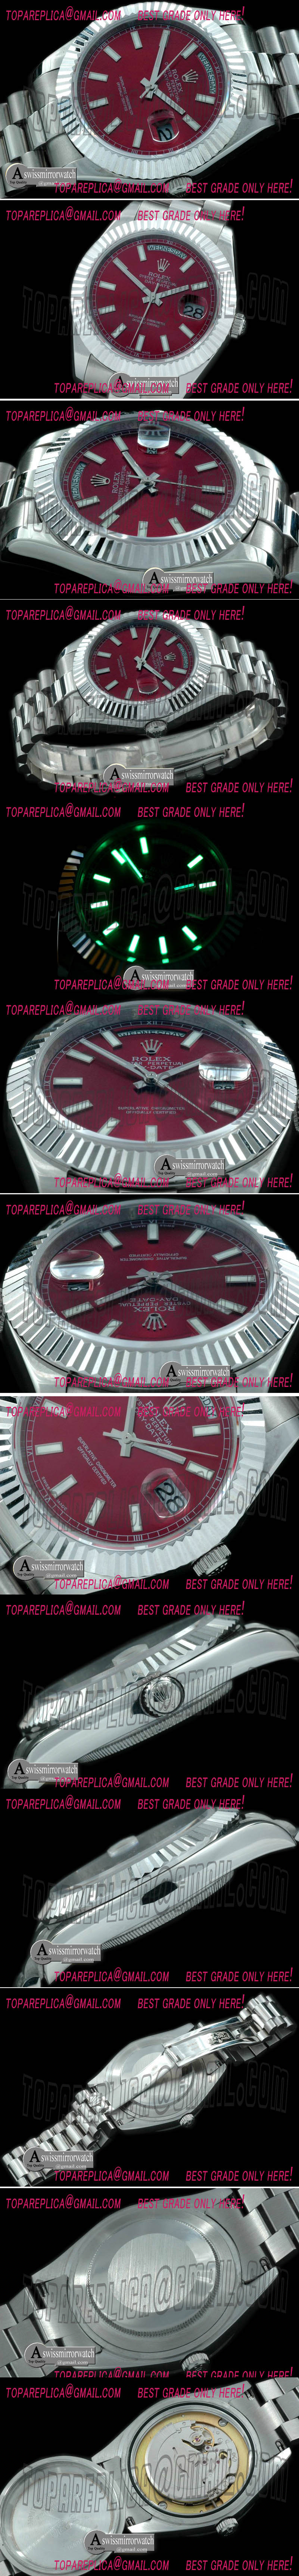 Replica Rolex Day Date II Watches